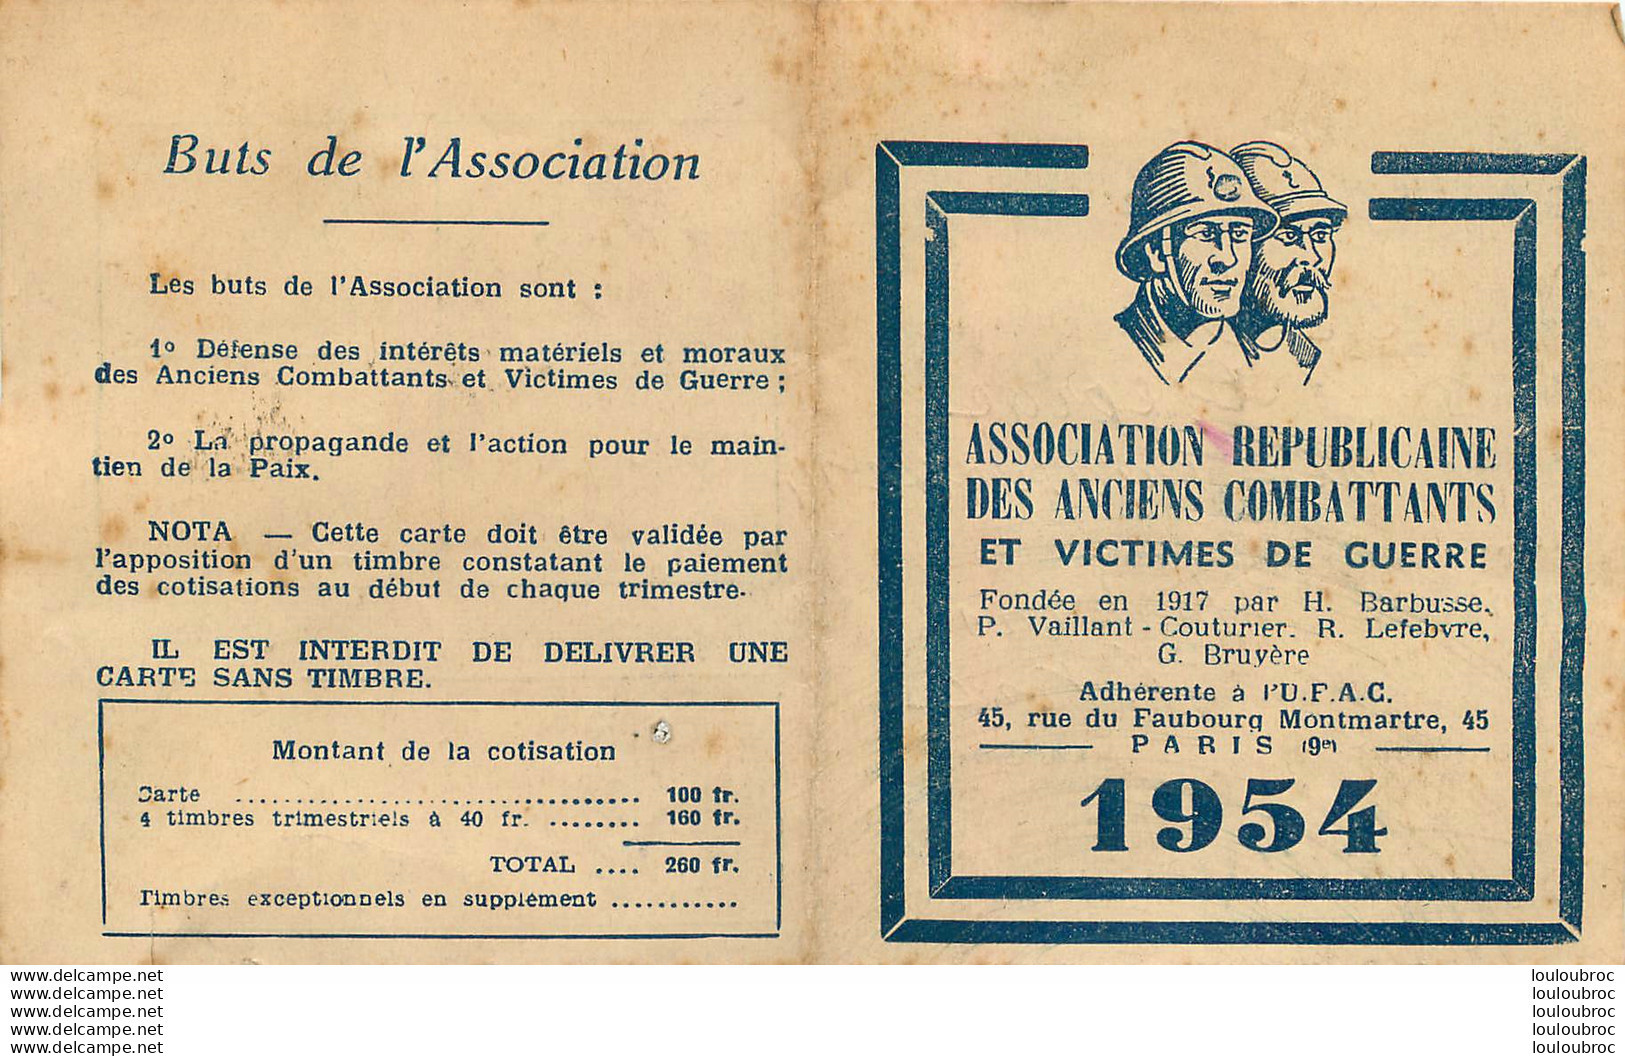 ASSOCIATION REPUBLICAINE DES ANCIENS COMBATTANTS ET VICTIME DE GUERRE CARTE DE MEMBRE 1954 DEFER GEORGES - Historical Documents